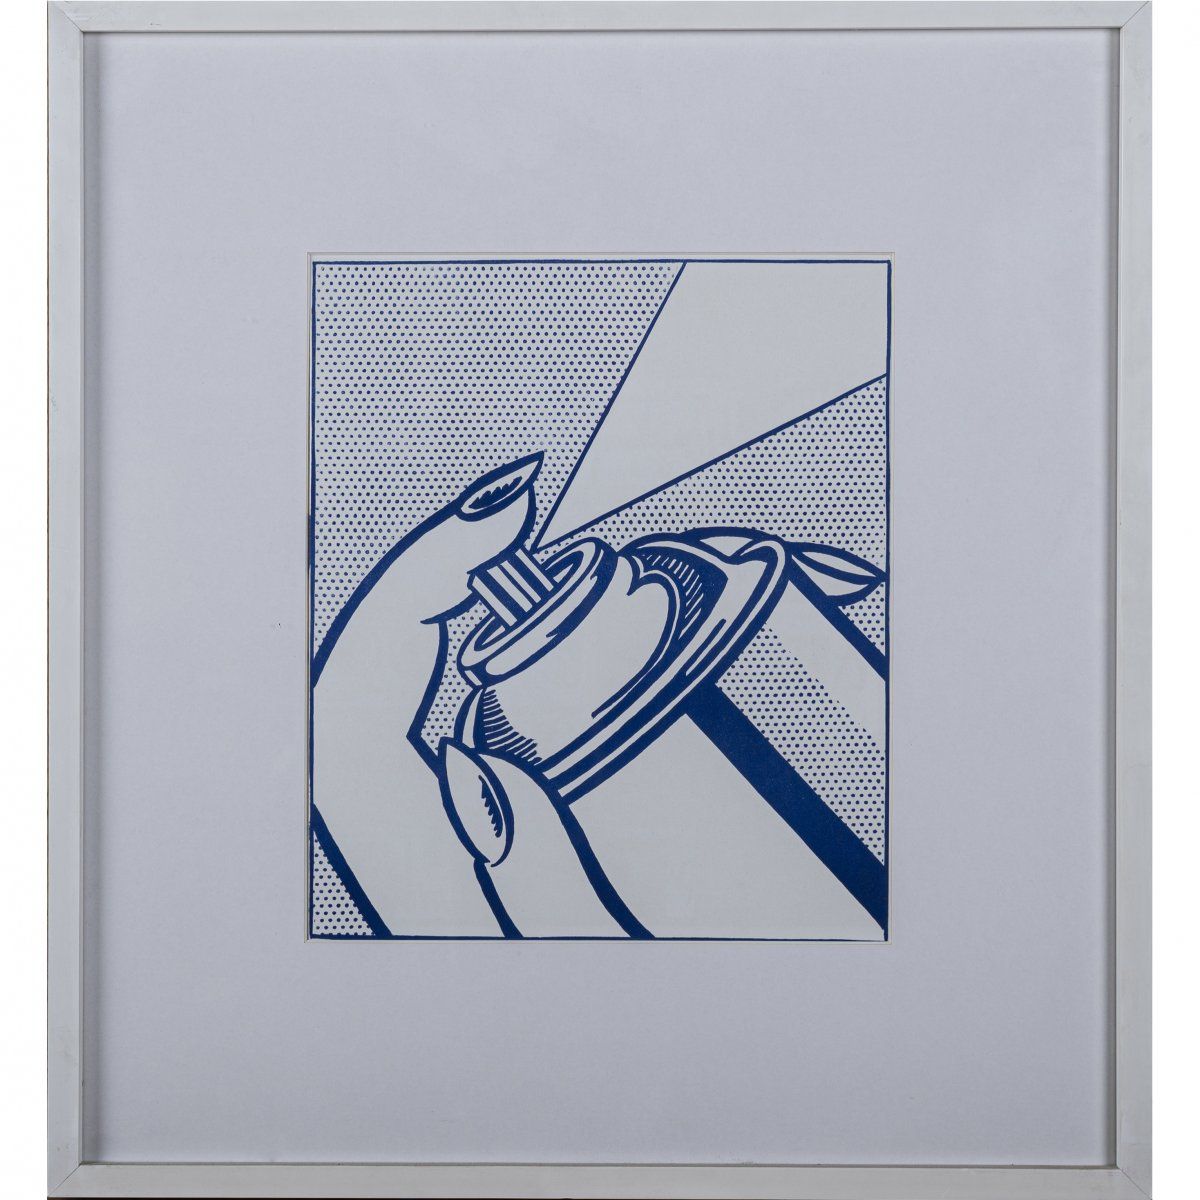 Null Roy Lichtenstein (1923 New York - 1997 ibid), 'Spray Can' aus 'One Cent Lif&hellip;